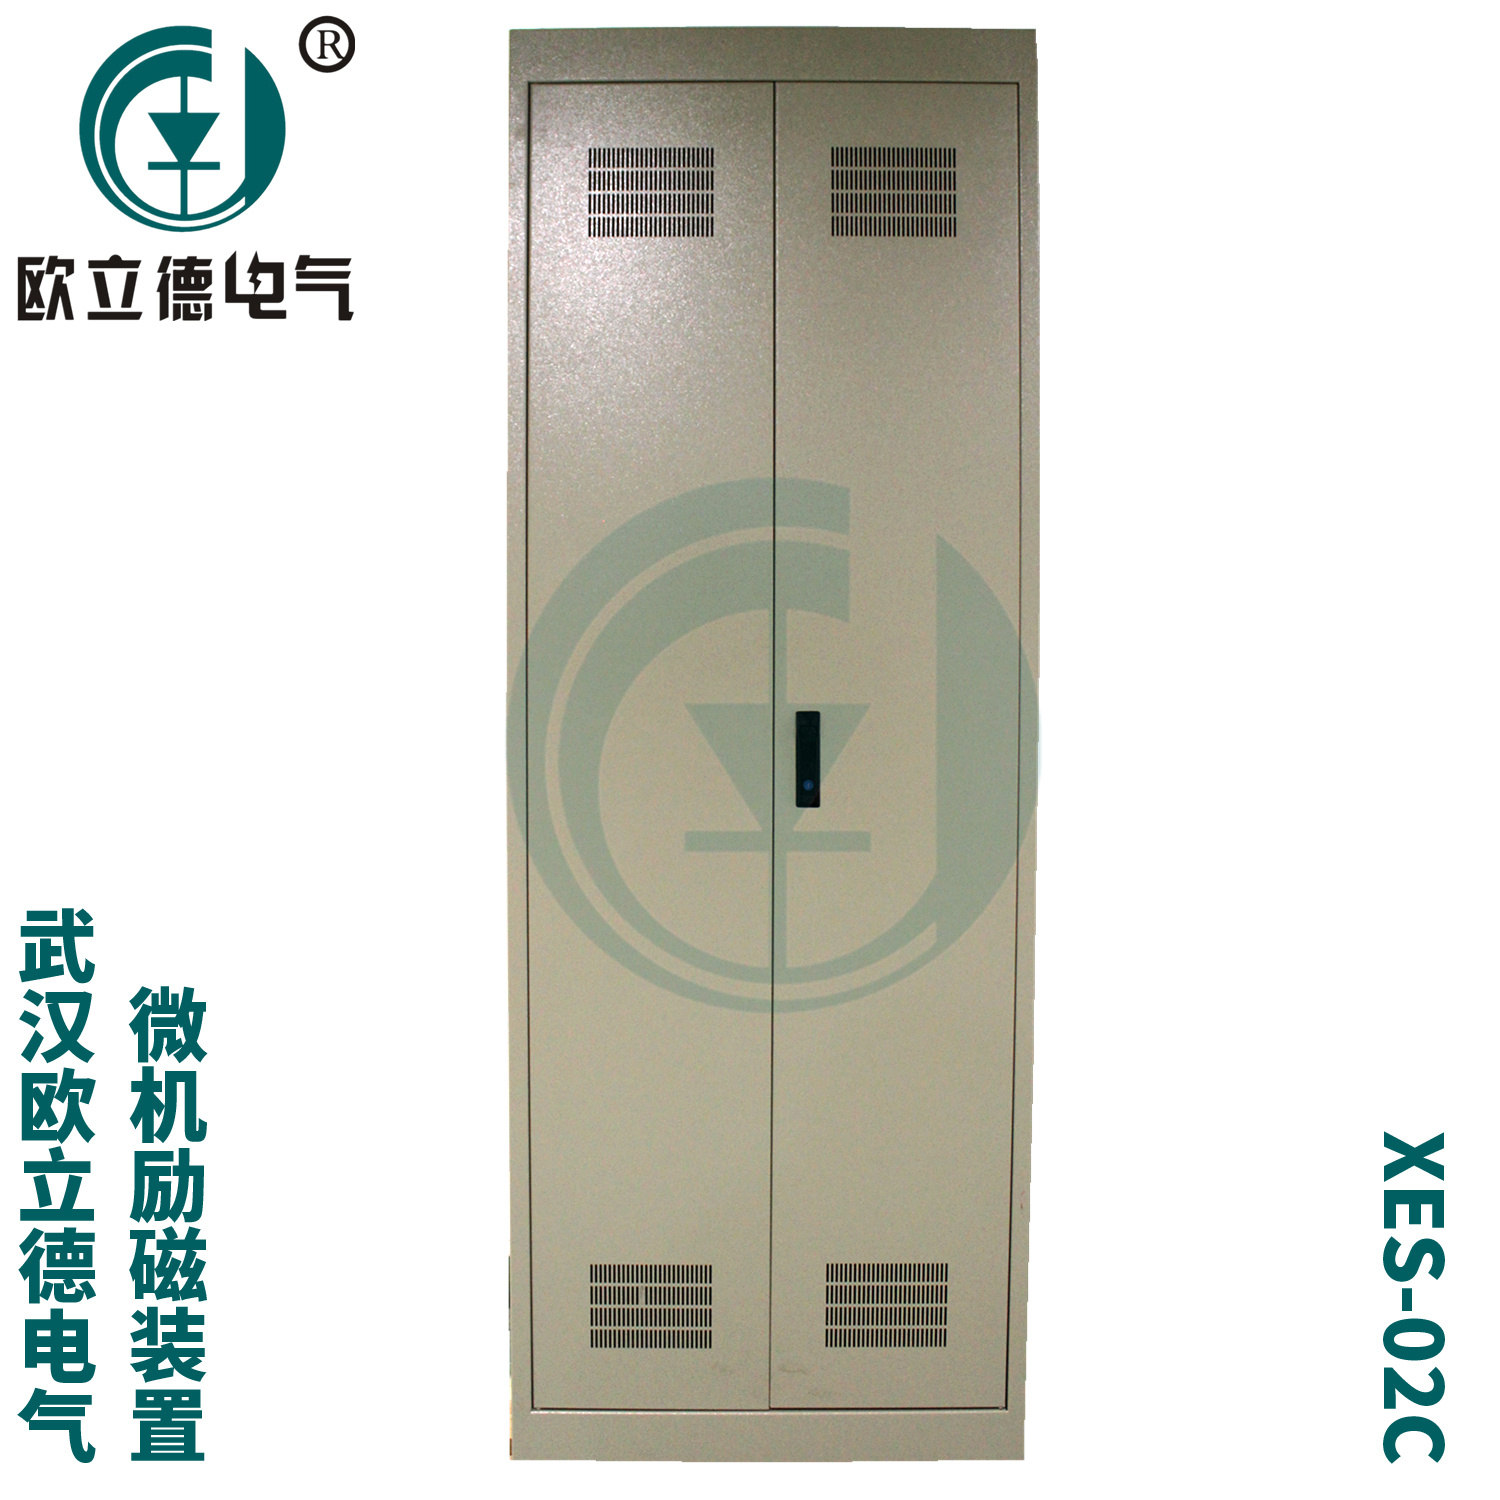 武汉欧立德XES-02C-200同步电机励磁柜